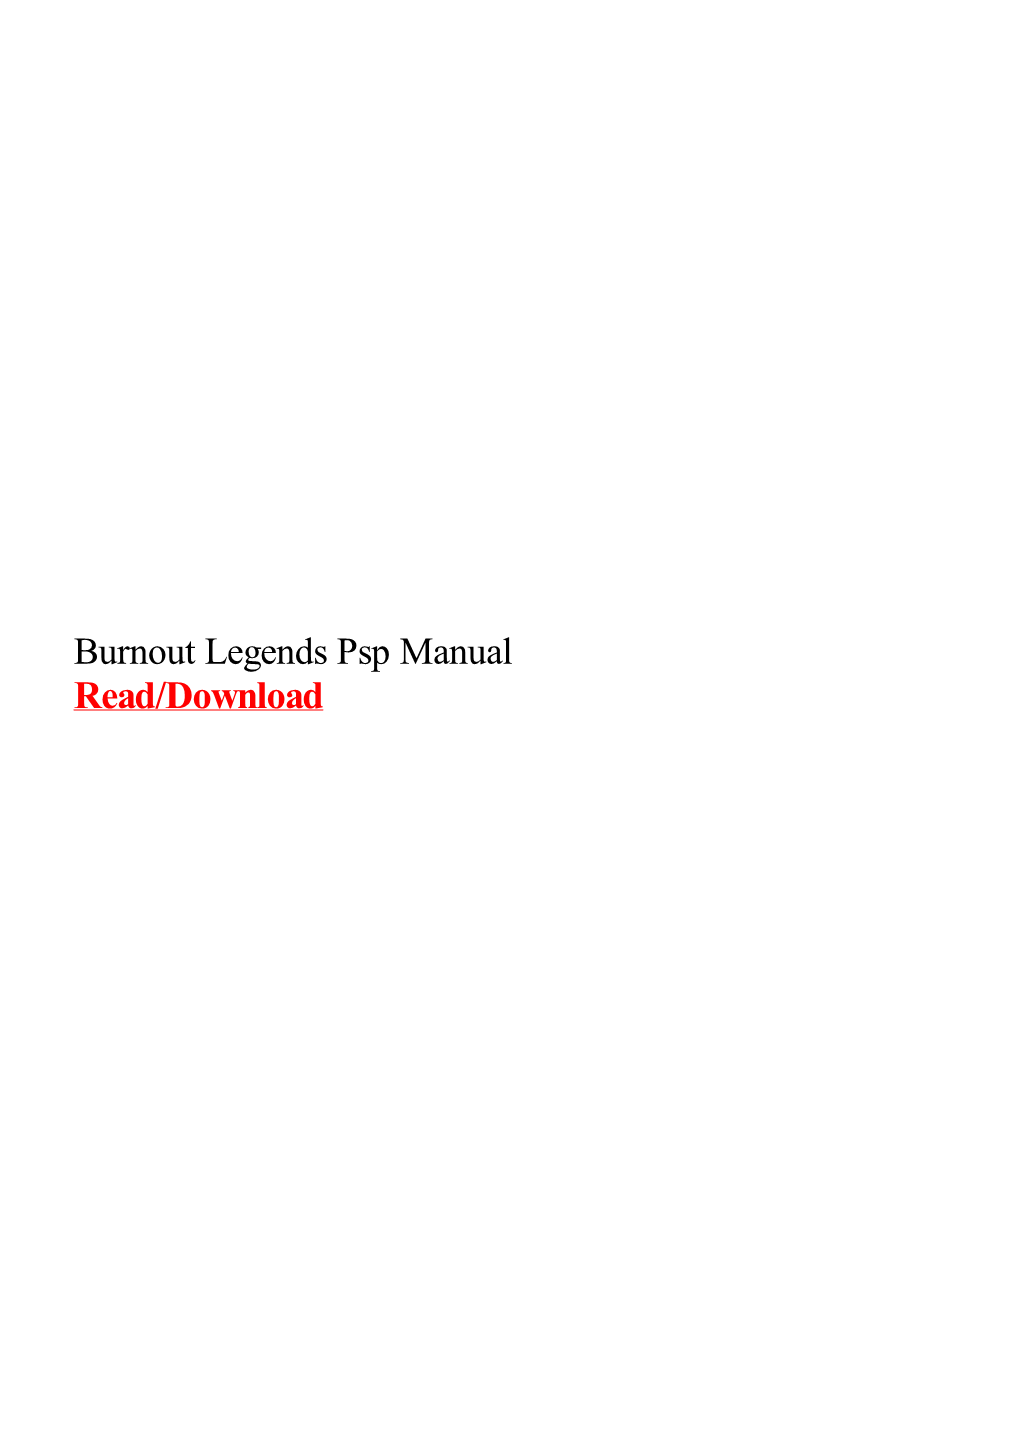 Burnout Legends Psp Manual.Pdf